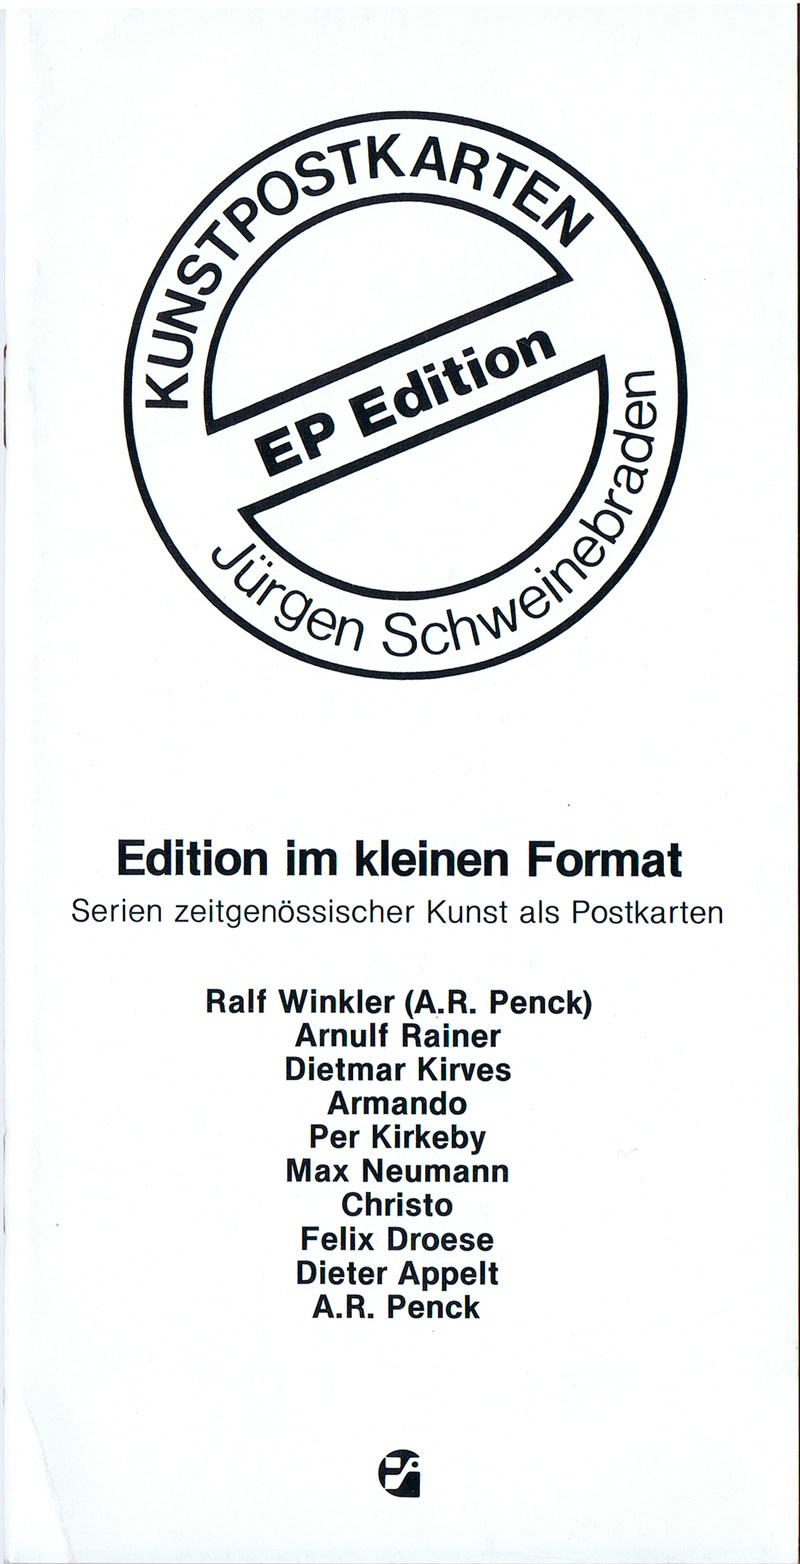 schweinebraden-ep-edition-1985